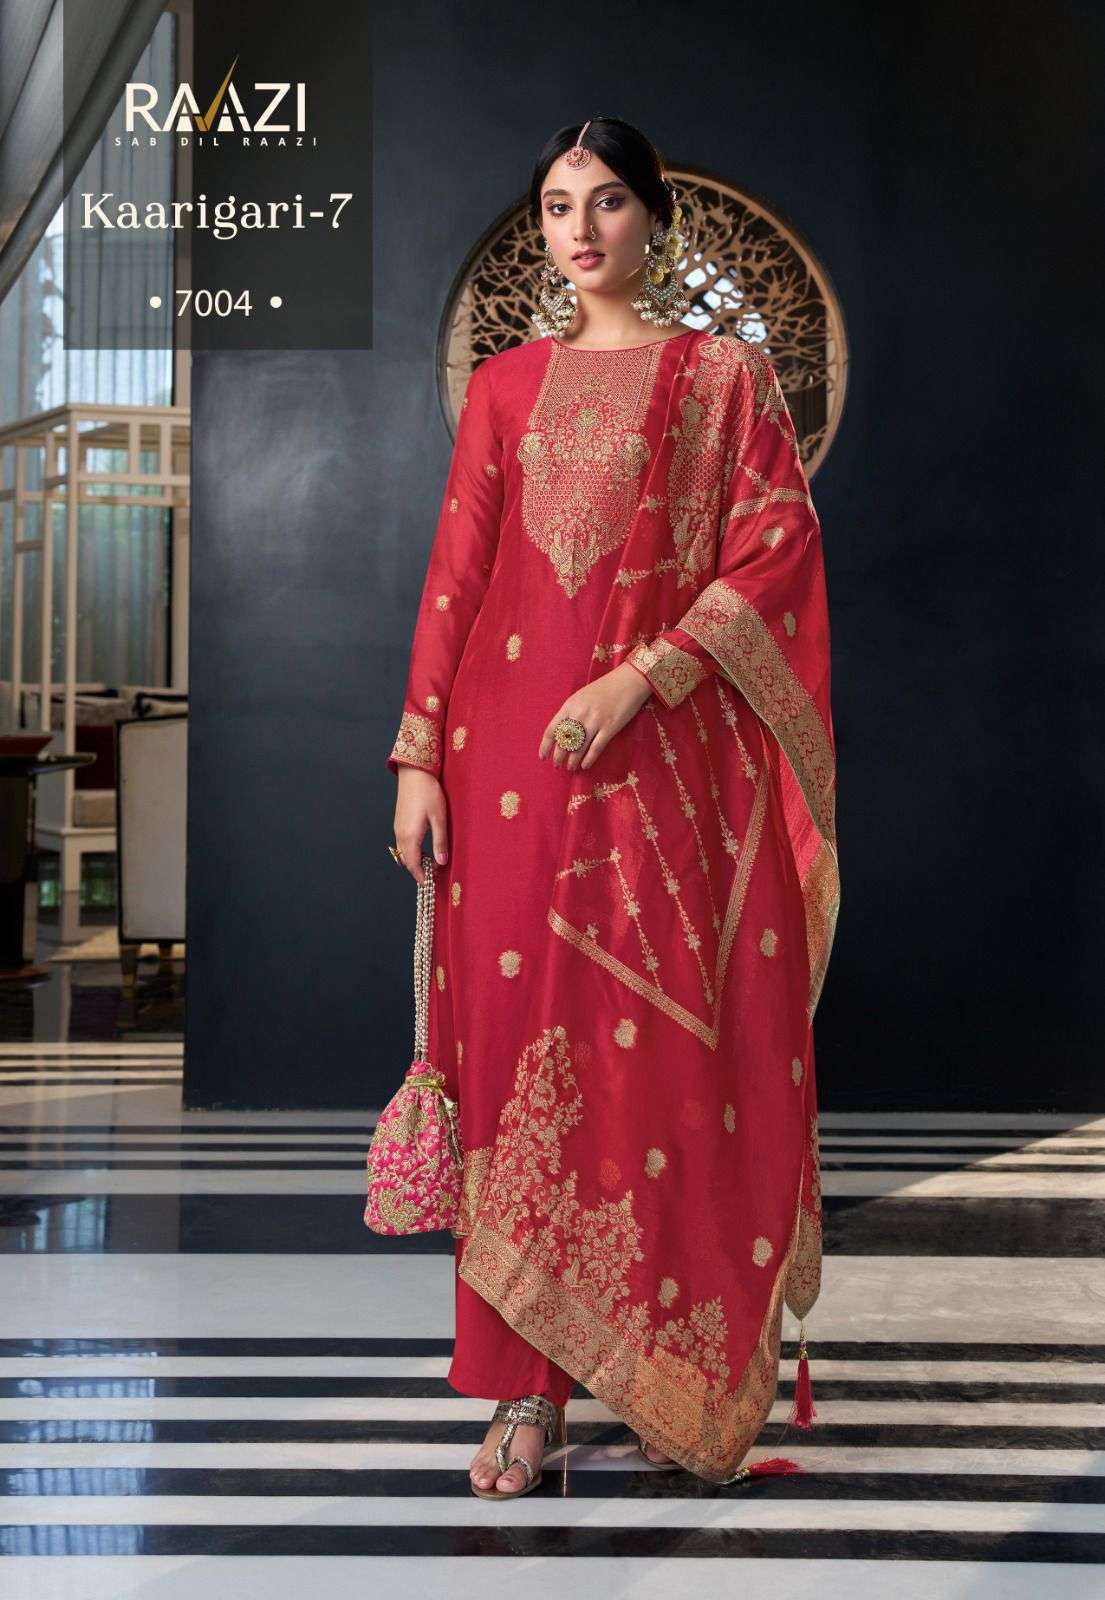 rama fashion karigari vol 7 7001 7004 series latest designer salwar kameez wholesaler surat gujarat 4 2023 09 26 15 36 31